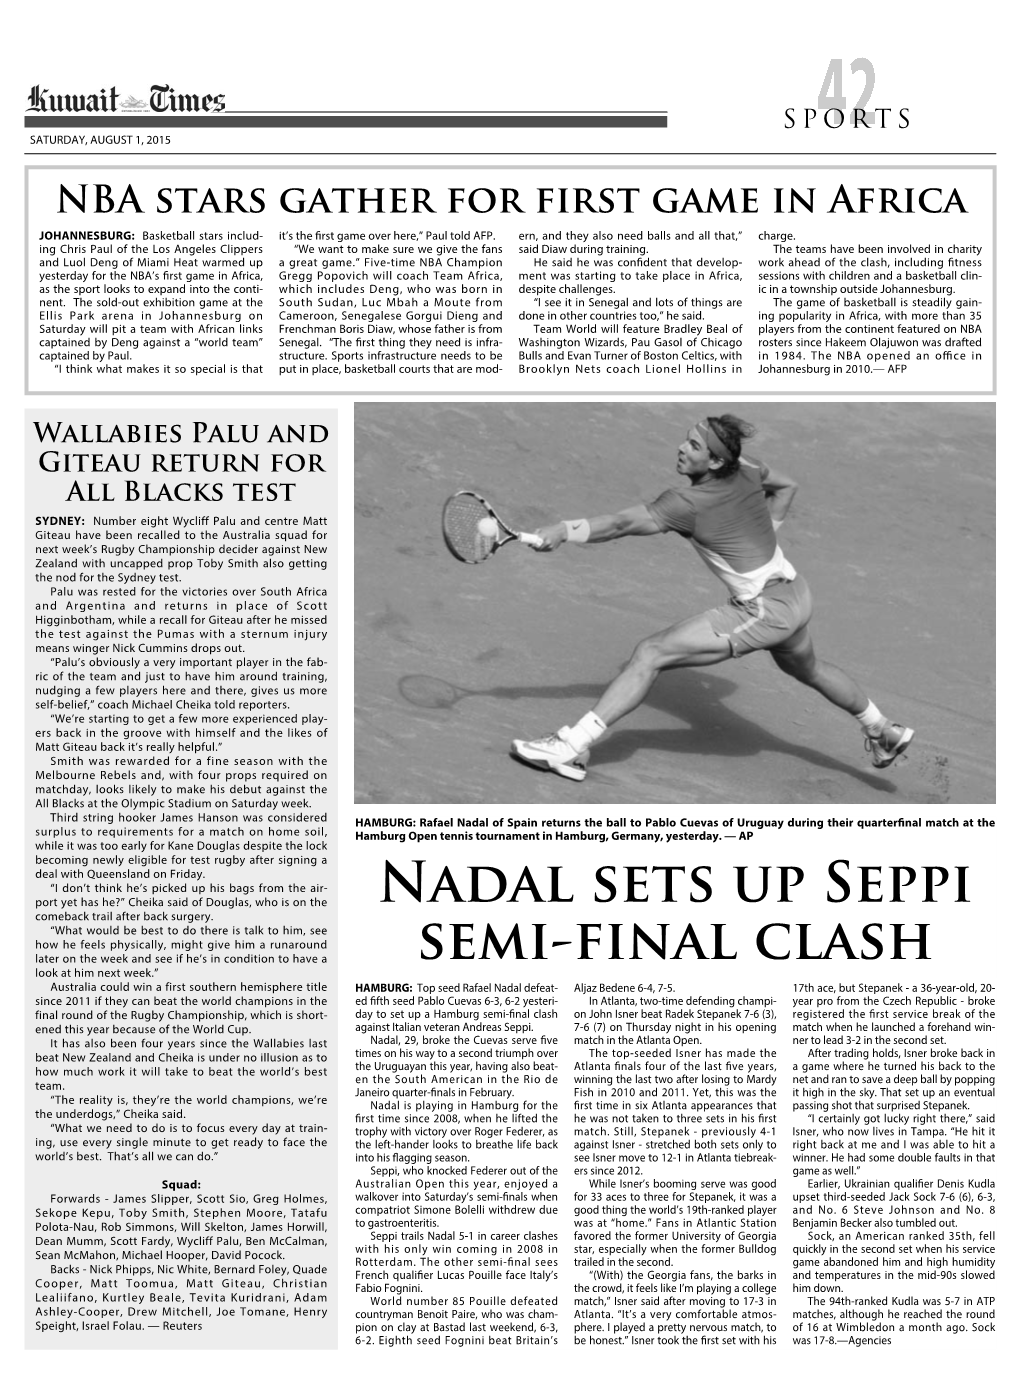 Nadal Sets up Seppi Semi-Final Clash